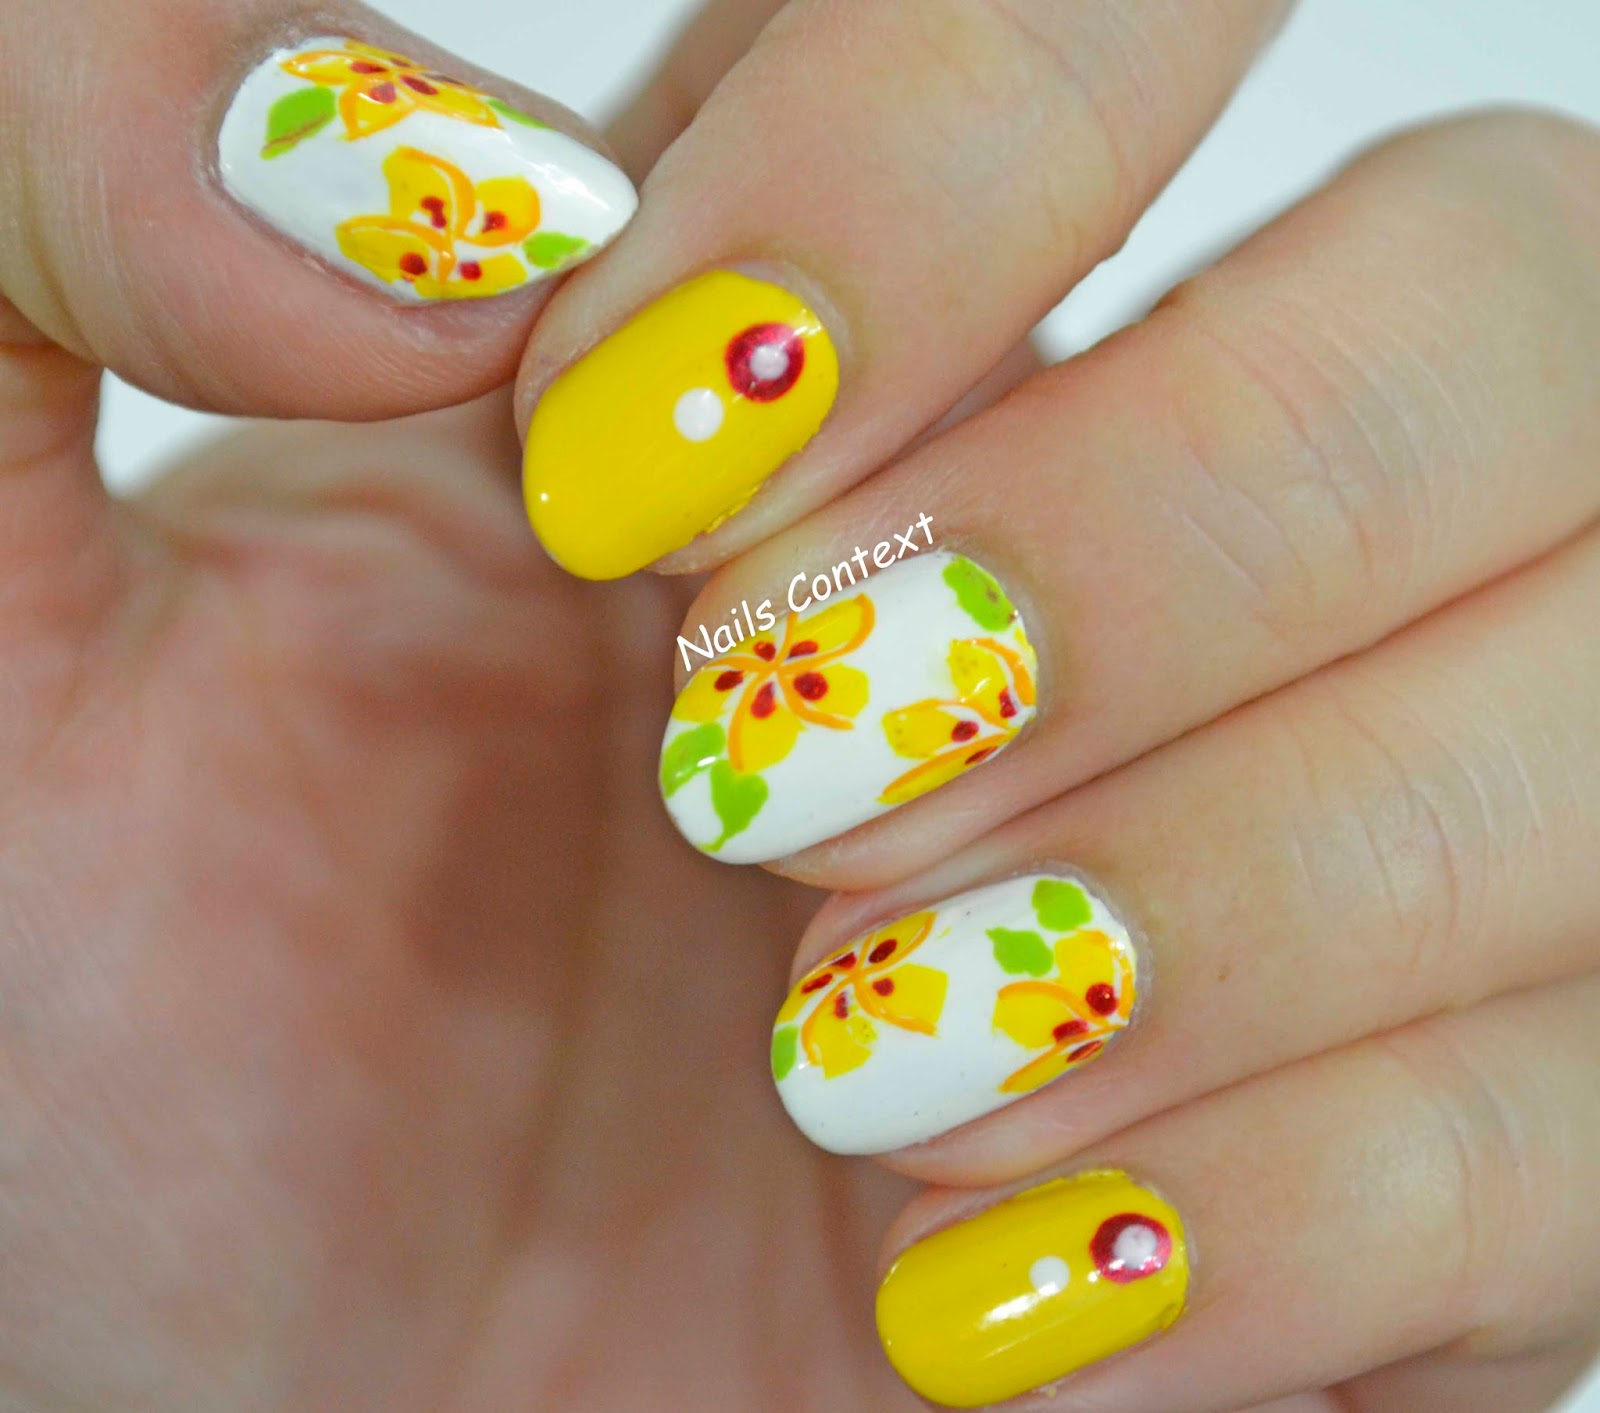 Nails Context: Hawaiian Flowers